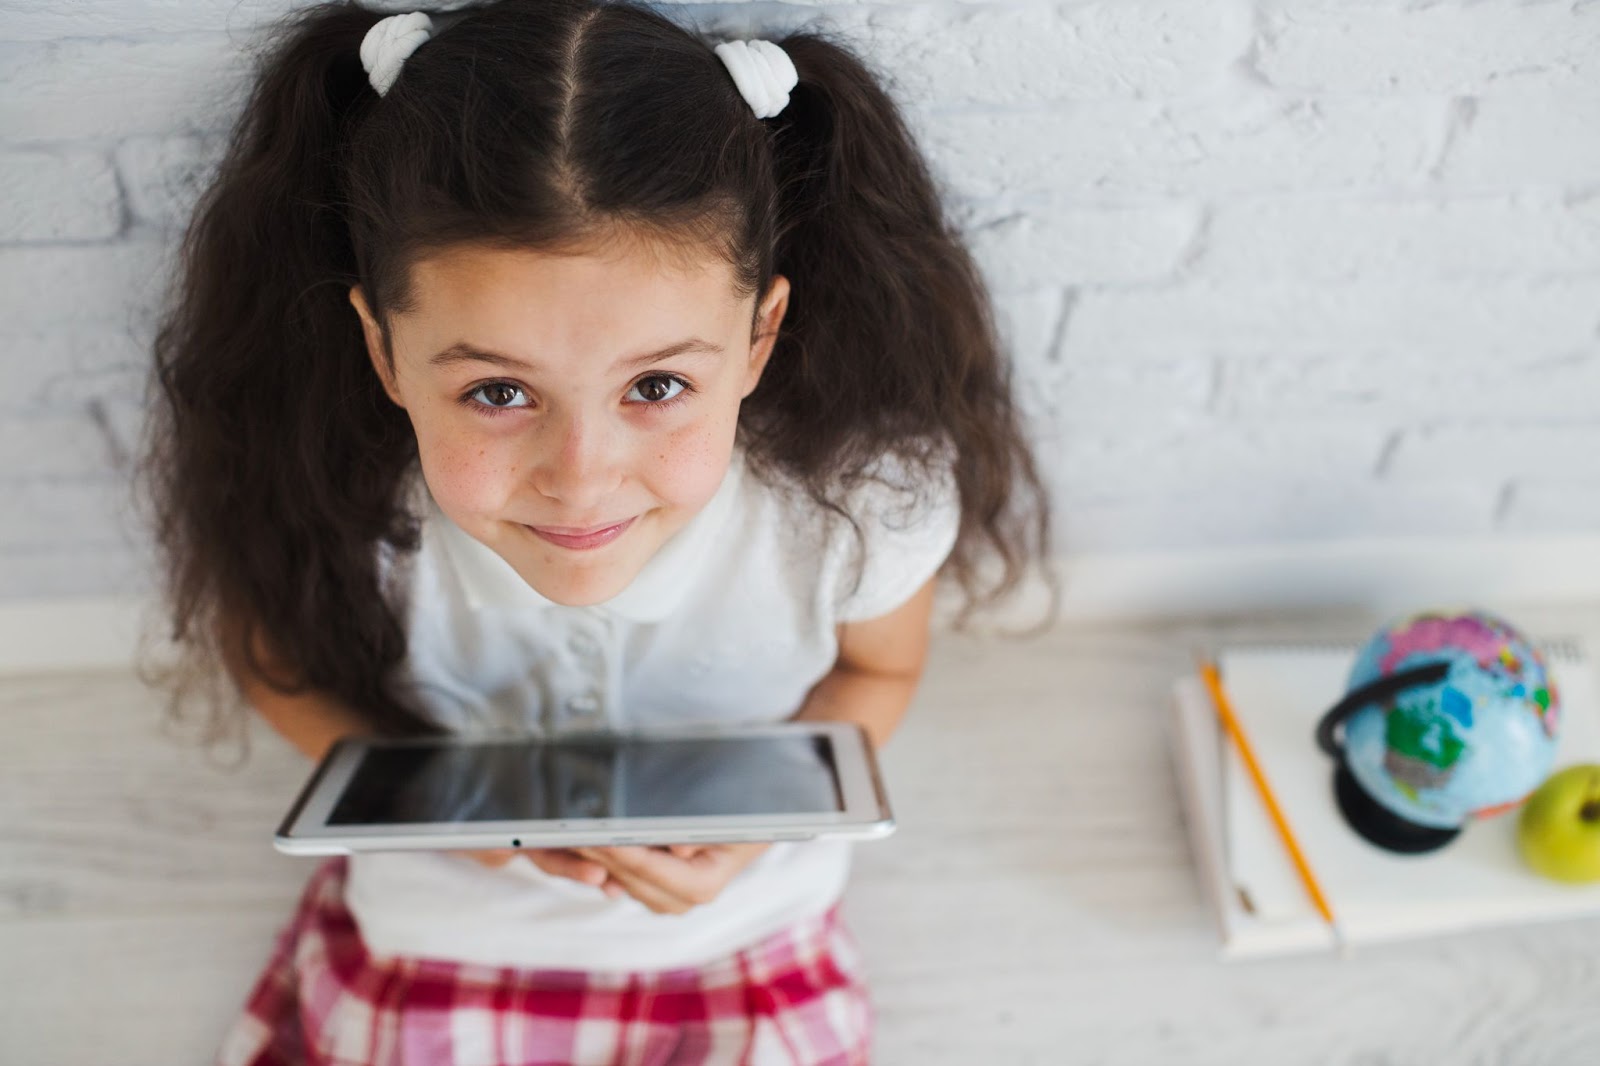 Uma menina sentada em um banco de madeira segura um tablet enquanto olha para cima. Ao seu lado há um caderno, um lápis e um pequeno globo terrestre.